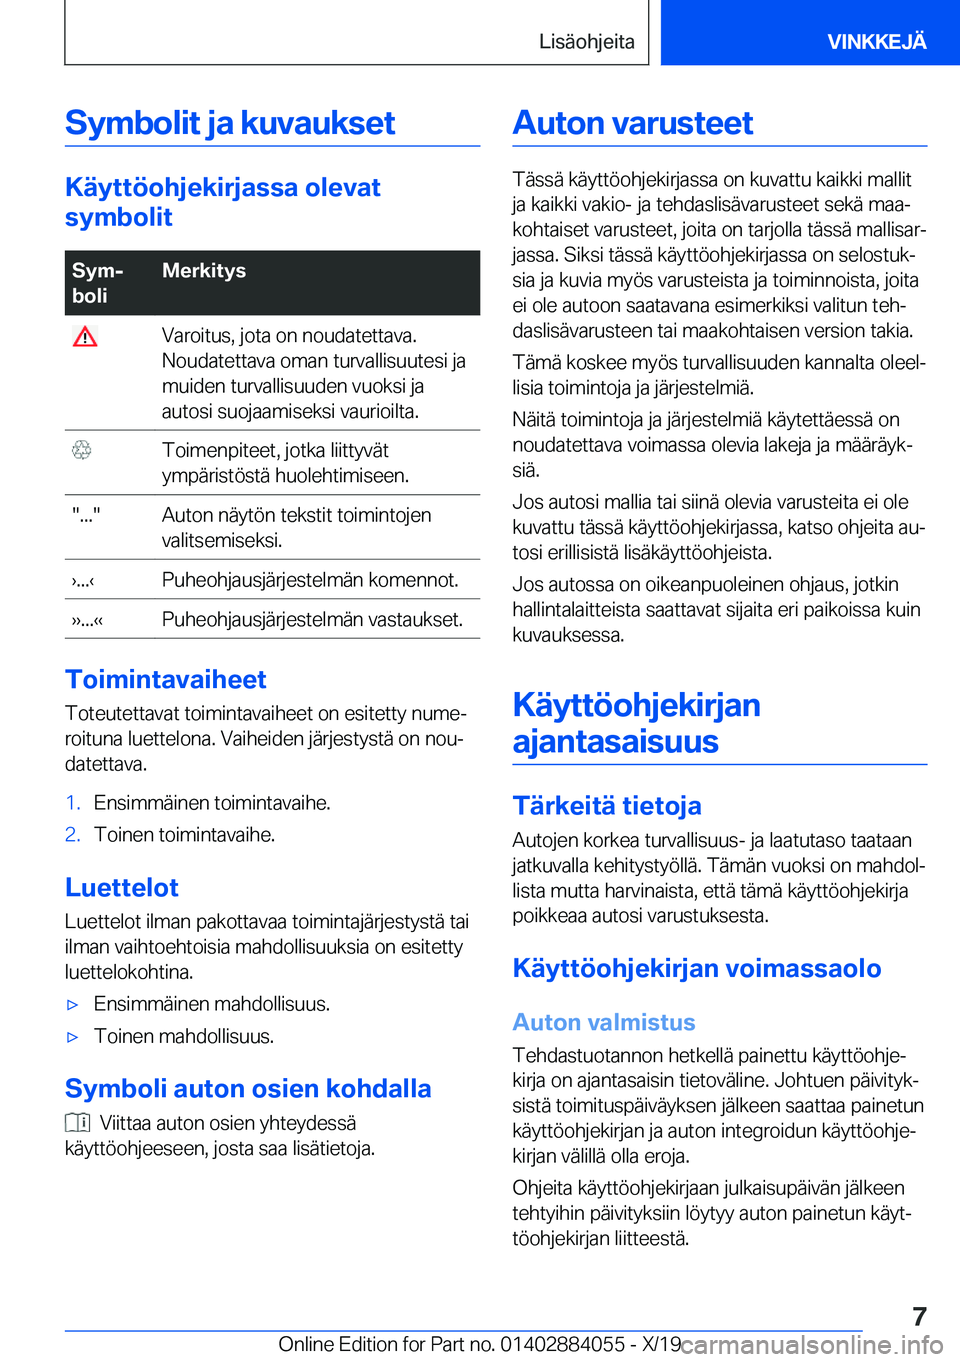 BMW 7 SERIES 2020  Omistajan Käsikirja (in Finnish) �S�y�m�b�o�l�i�t��j�a��k�u�v�a�u�k�s�e�t
�K�